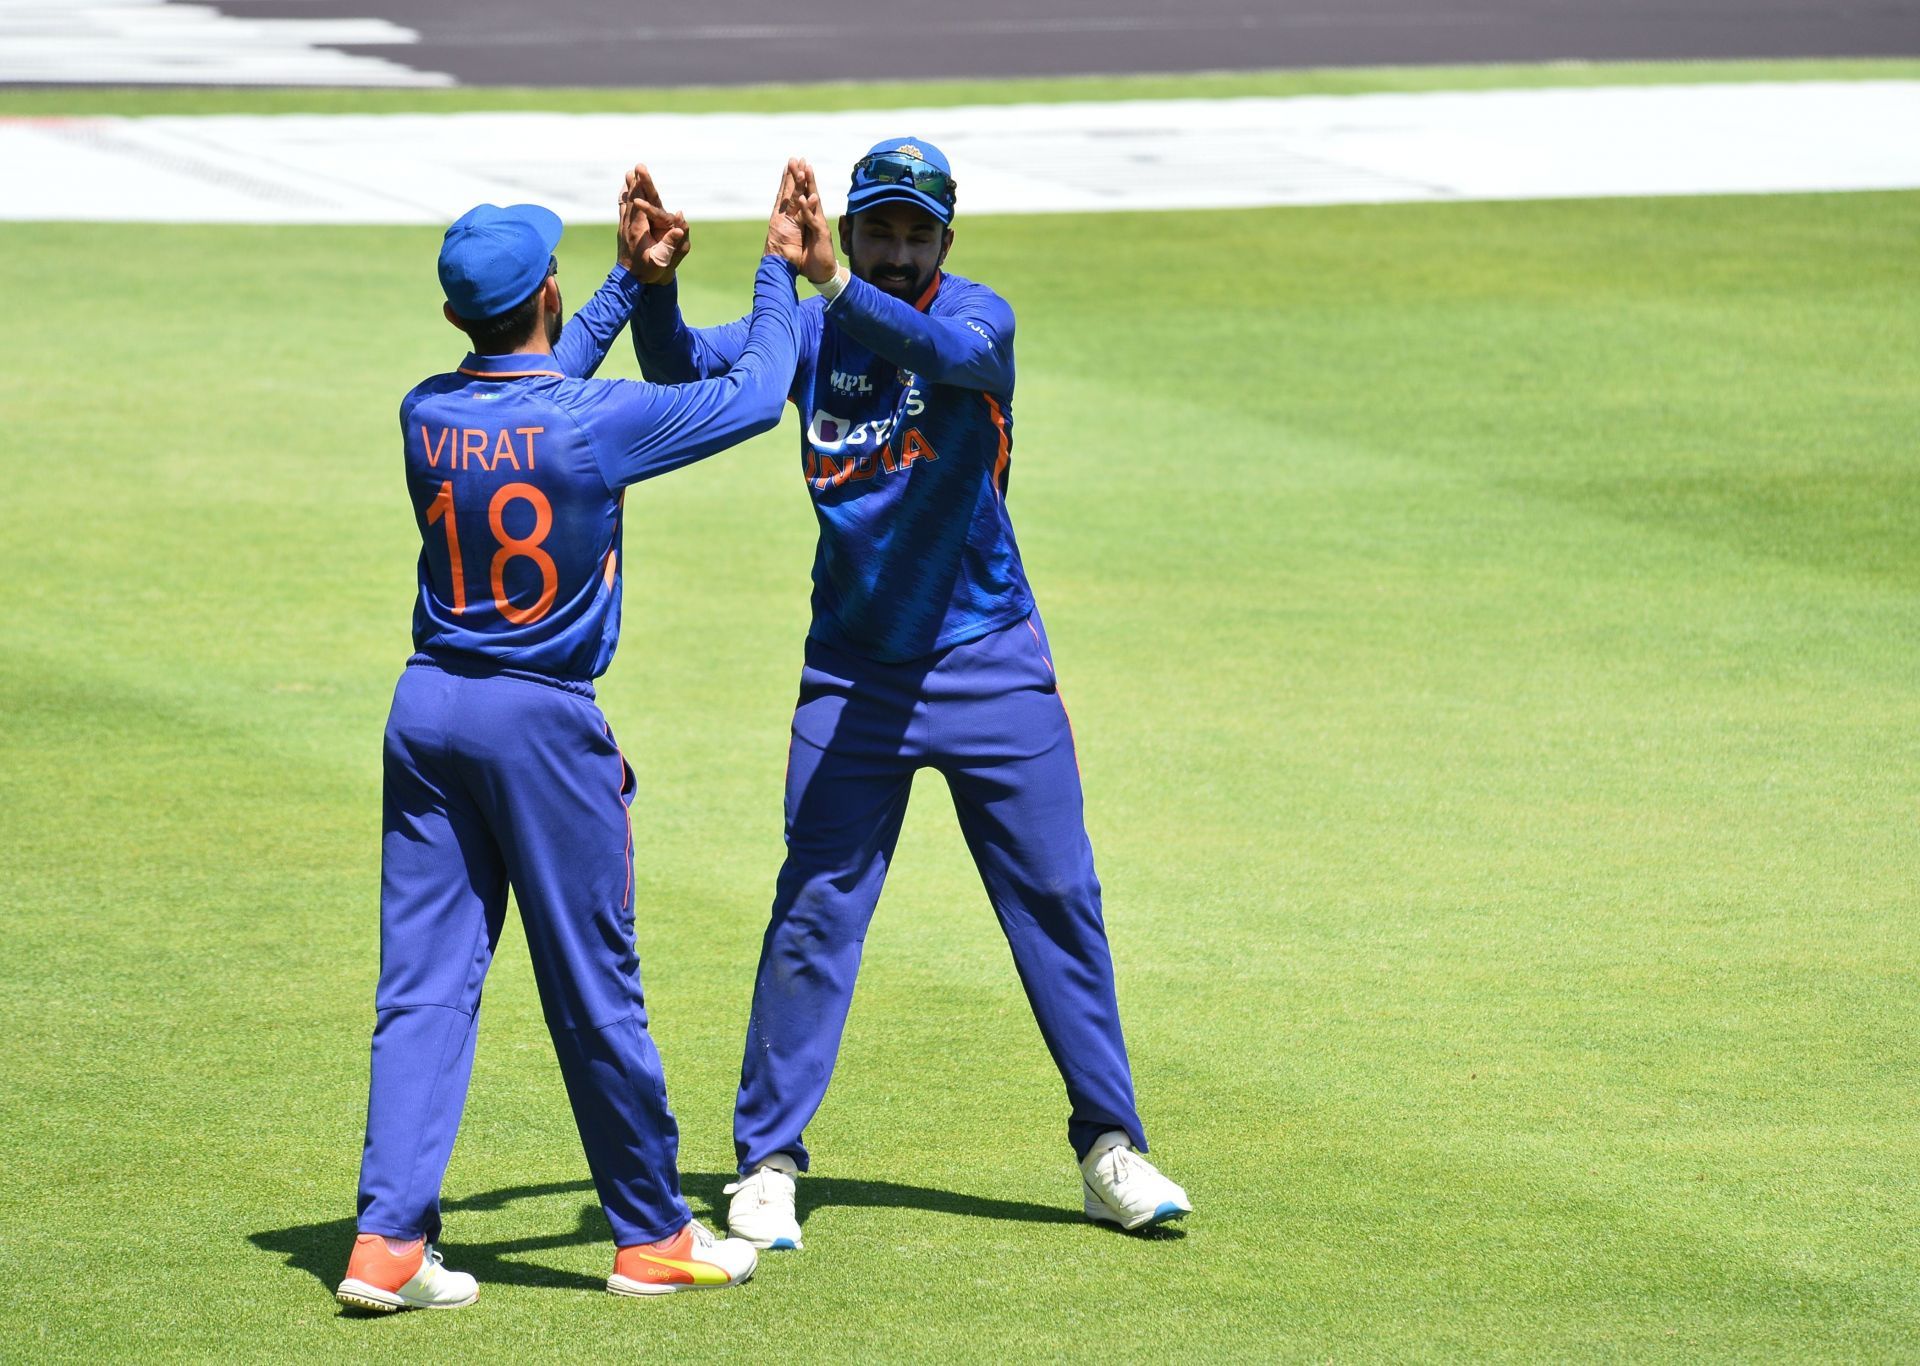 Virat Kohli has nine ODI centuries against the West Indies.